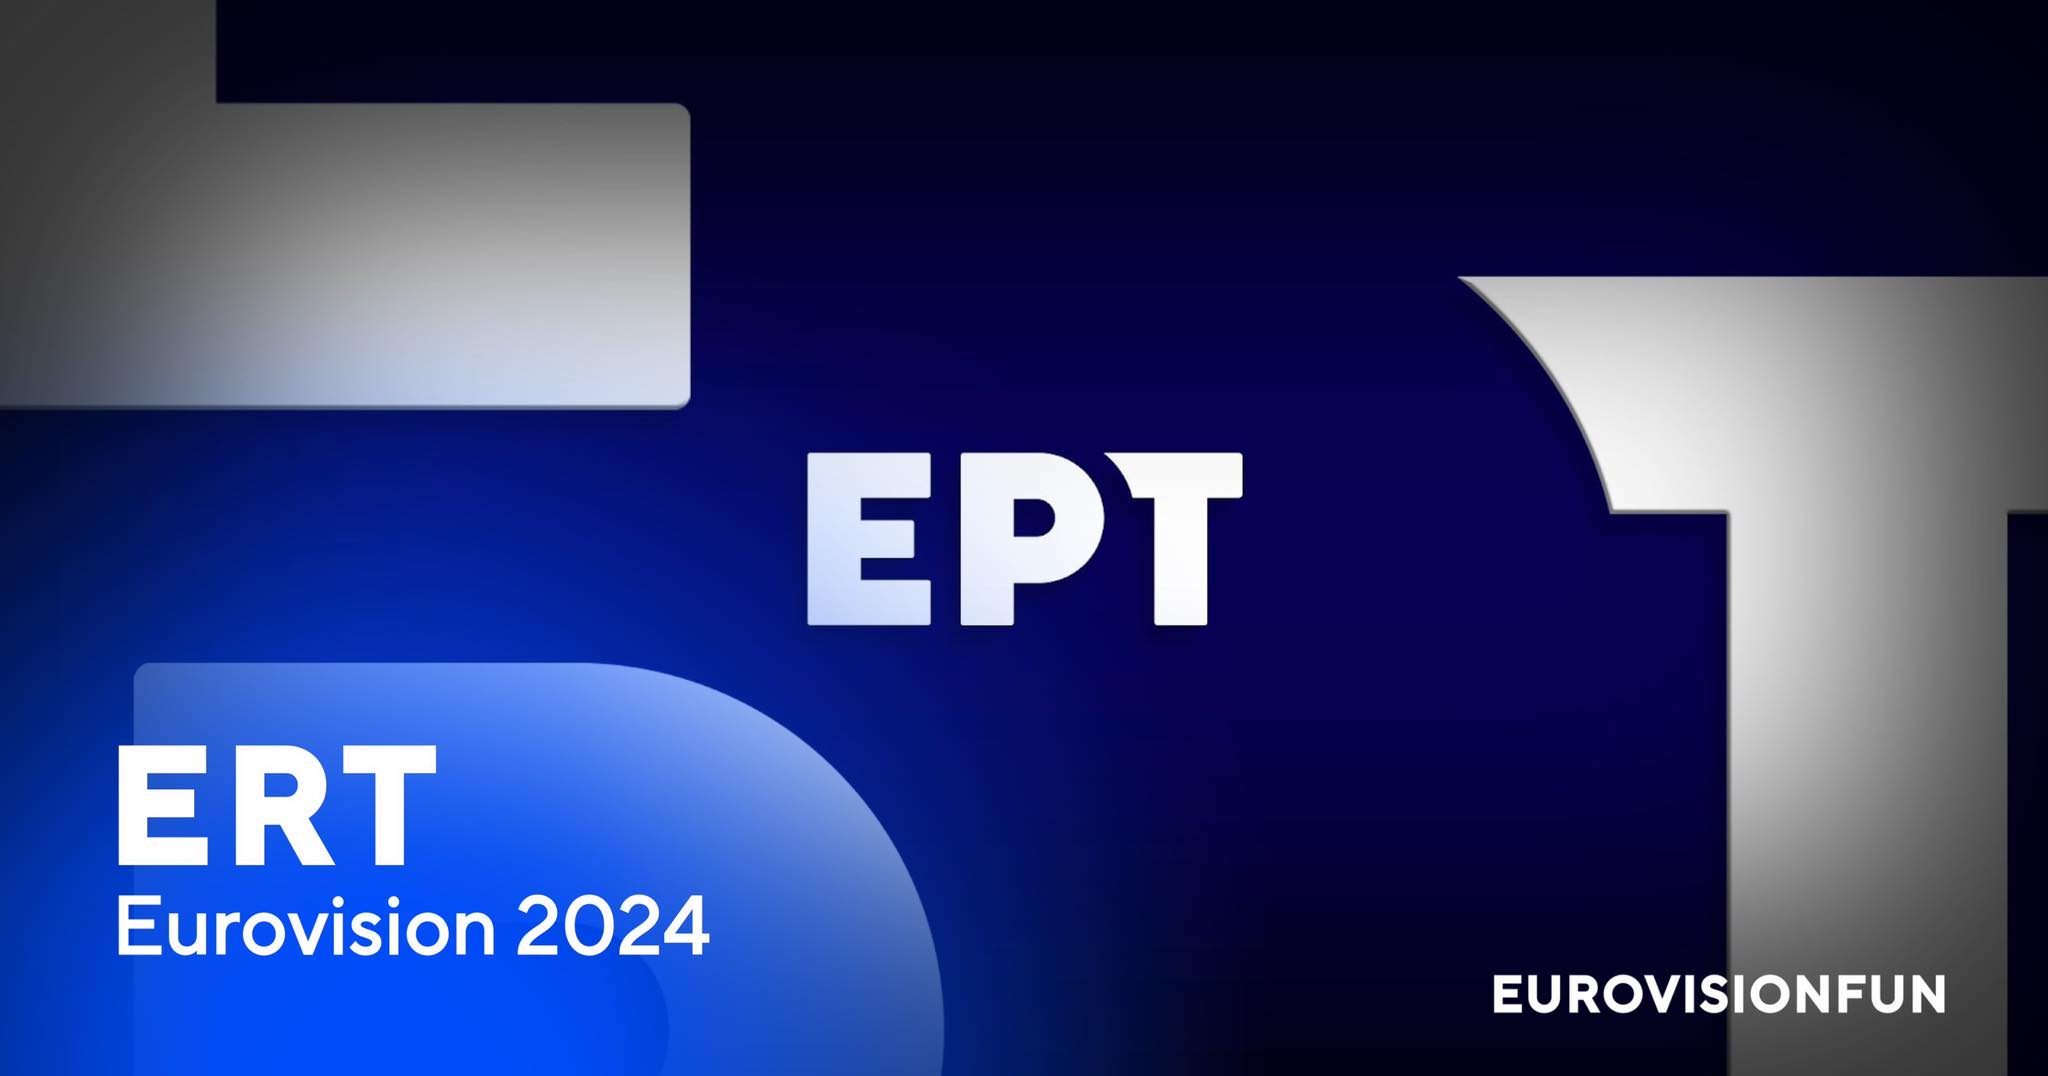 eurovisionfun.com